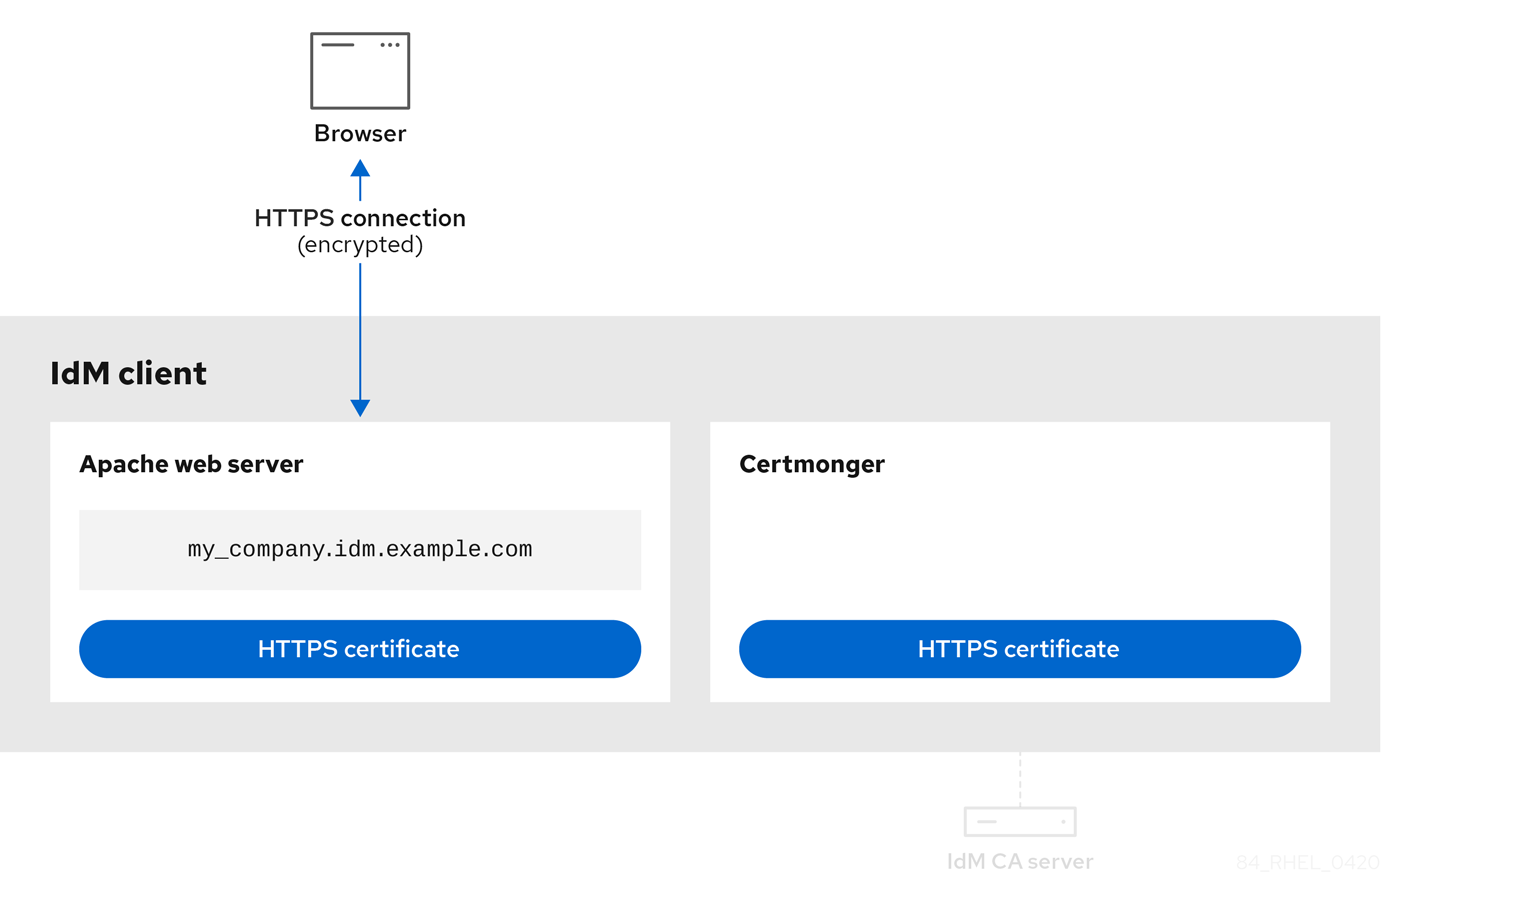 图表显示分配给 Apache Web 服务器的 HTTPS 证书的镜像，并分配给 certmonger 服务。浏览器和 Apache webserver 之间有一个箭头，显示连接现在是加密的 HTTPS 连接。certmonger 服务和 IdM CA 服务器间的连接是不活跃的。